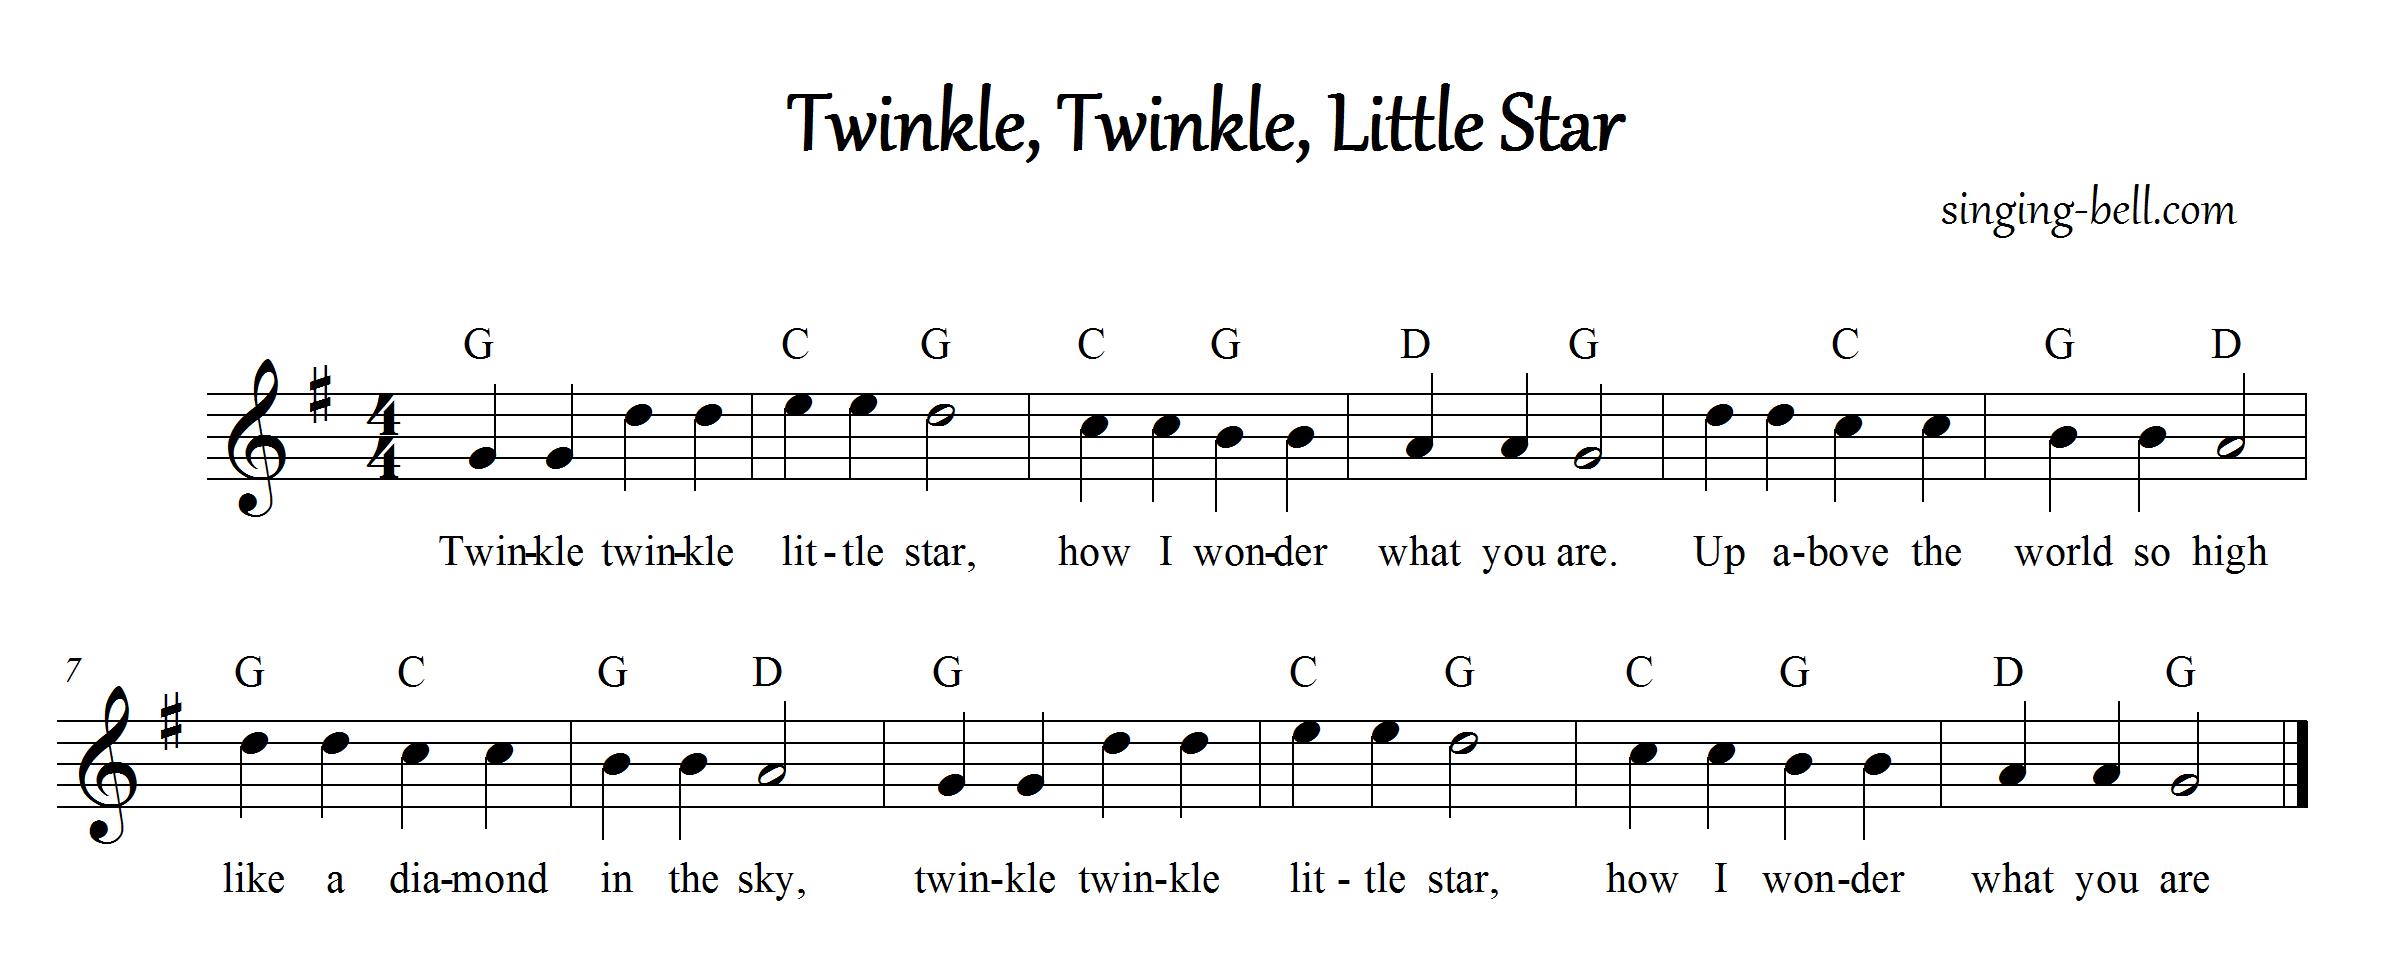 TwinkleTwinkle2